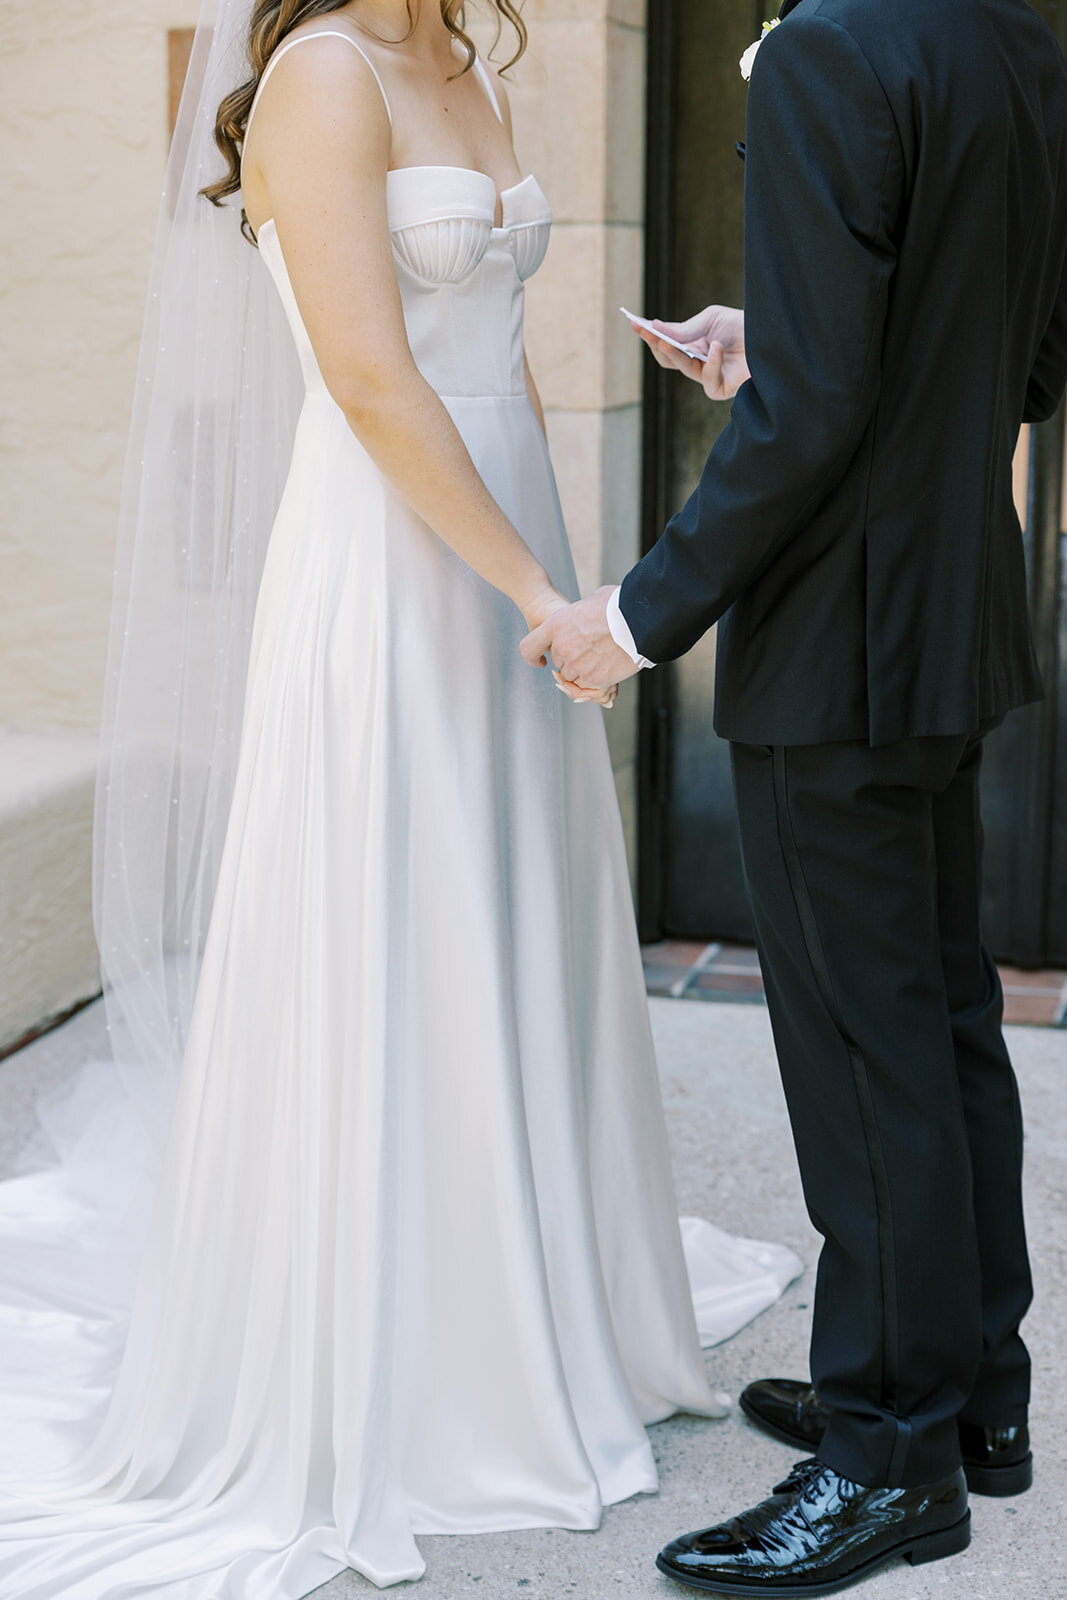 CORNELIA ZAISS PHOTOGRAPHY COURTNEY + ANDREW WEDDING 0368_websize